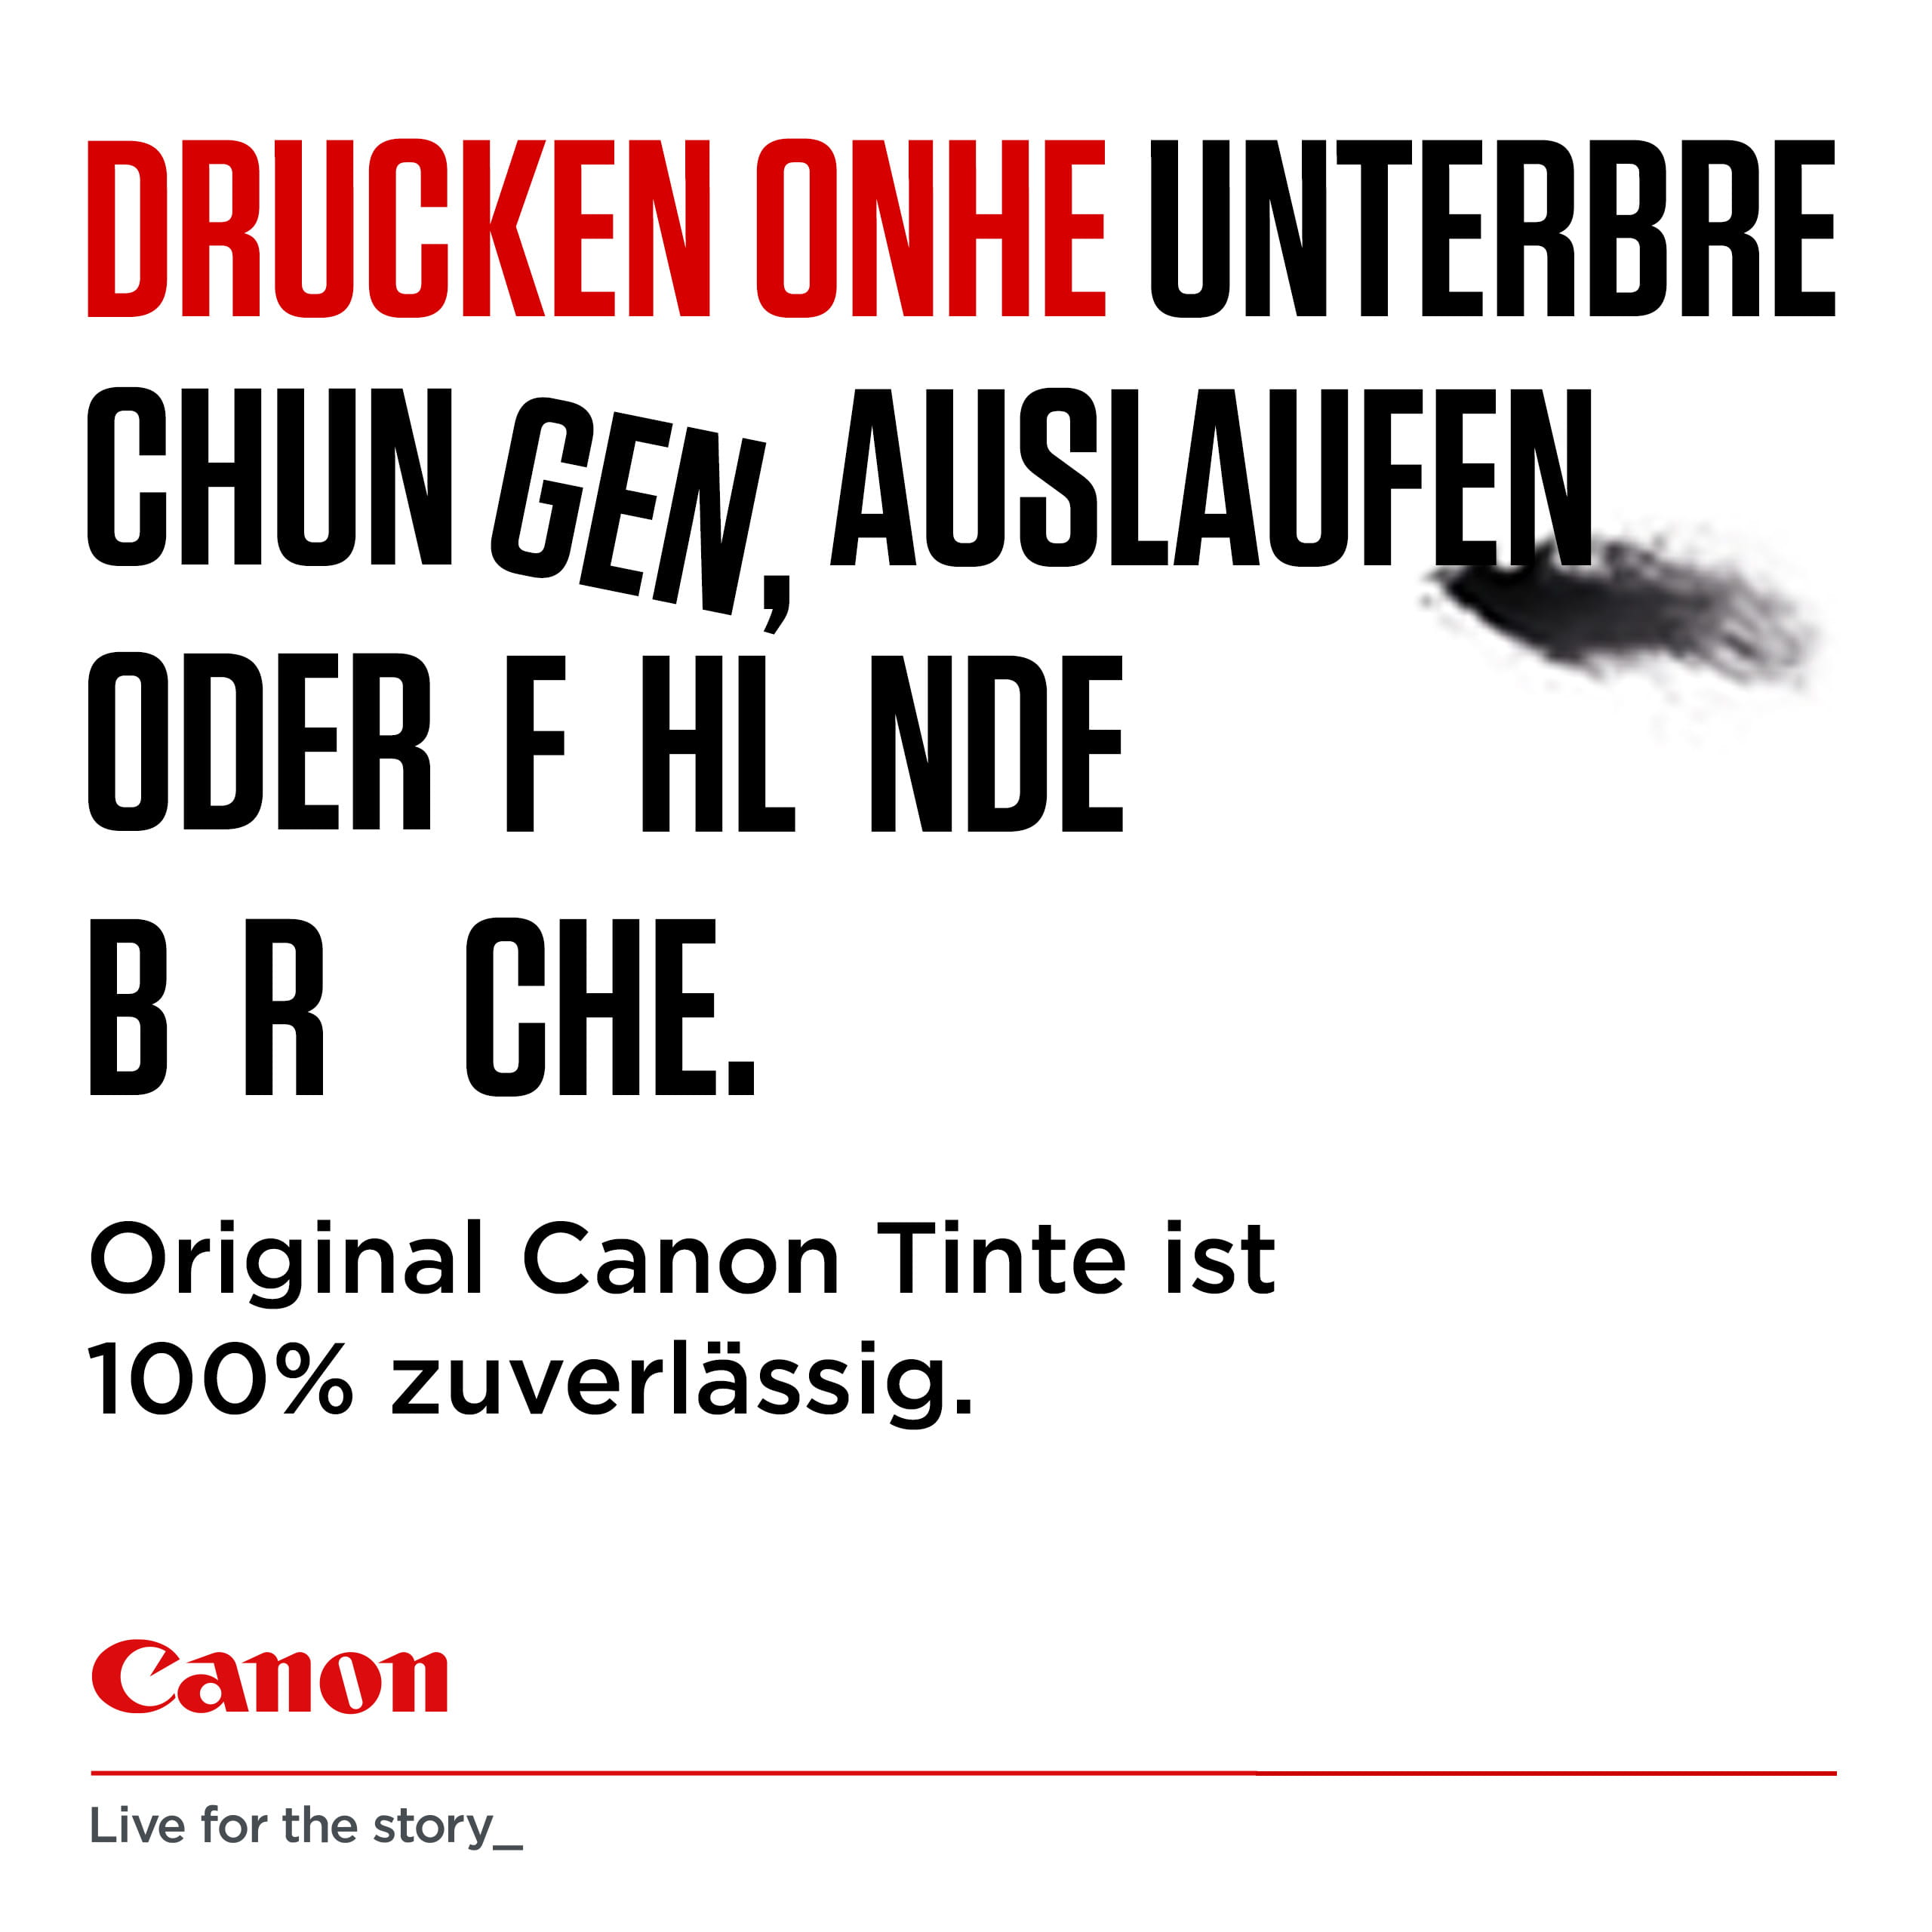 Canon CL-541XL - 15 ml - Hohe Ergiebigkeit - Farbe (Cyan, Magenta, Gelb)